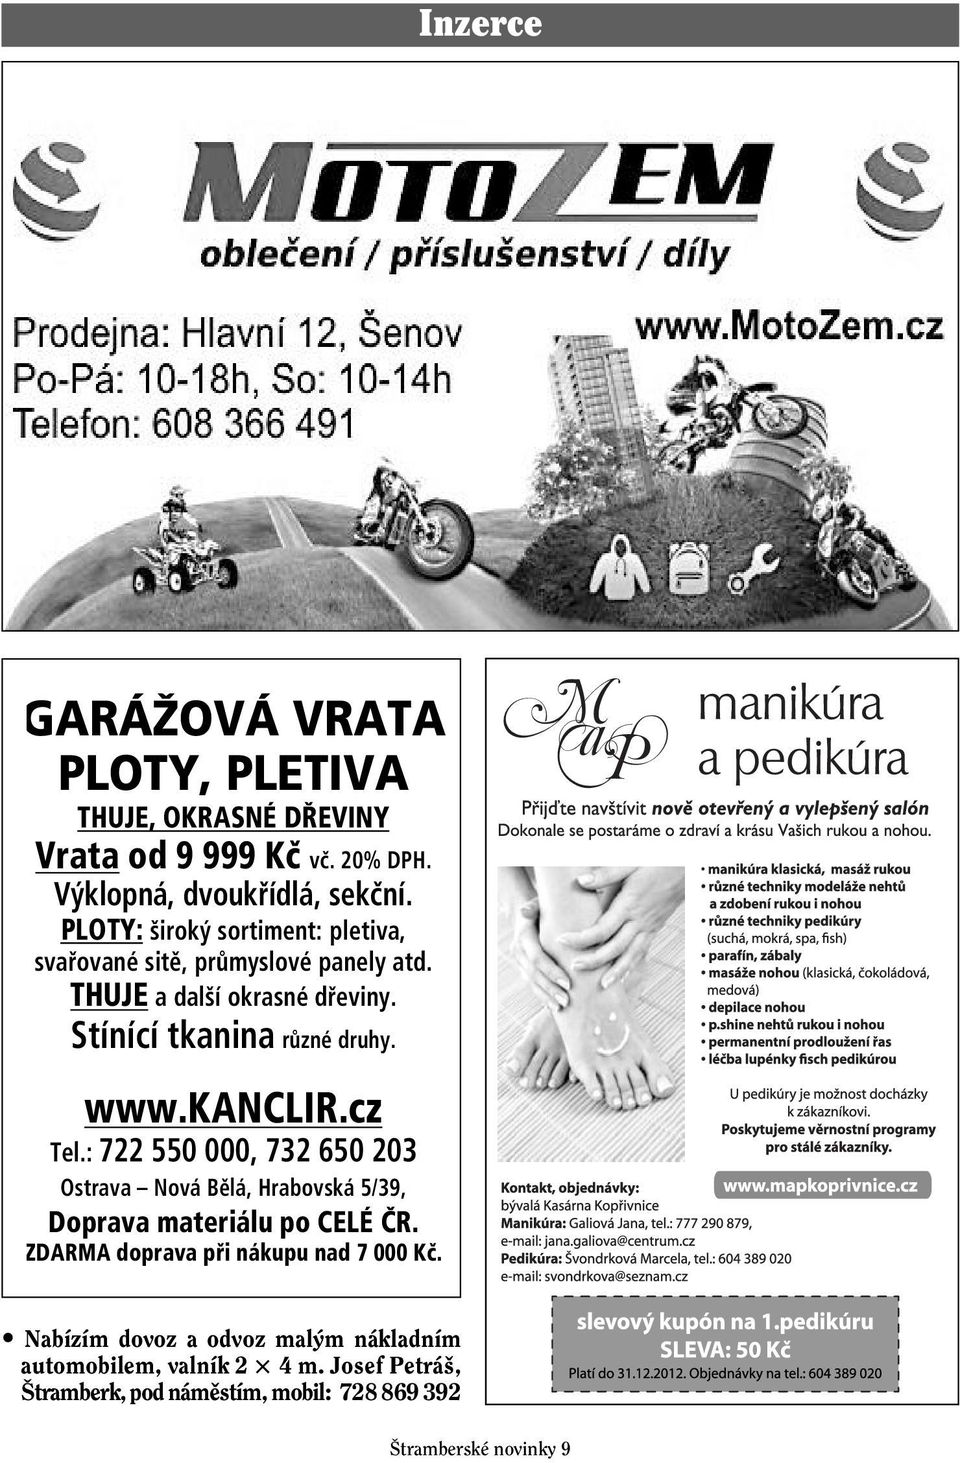 kanclir.cz Tel.: 722 550 000, 732 650 203 Ostrava Nová Bělá, Hrabovská 5/39, Doprava materiálu po CELÉ ČR.